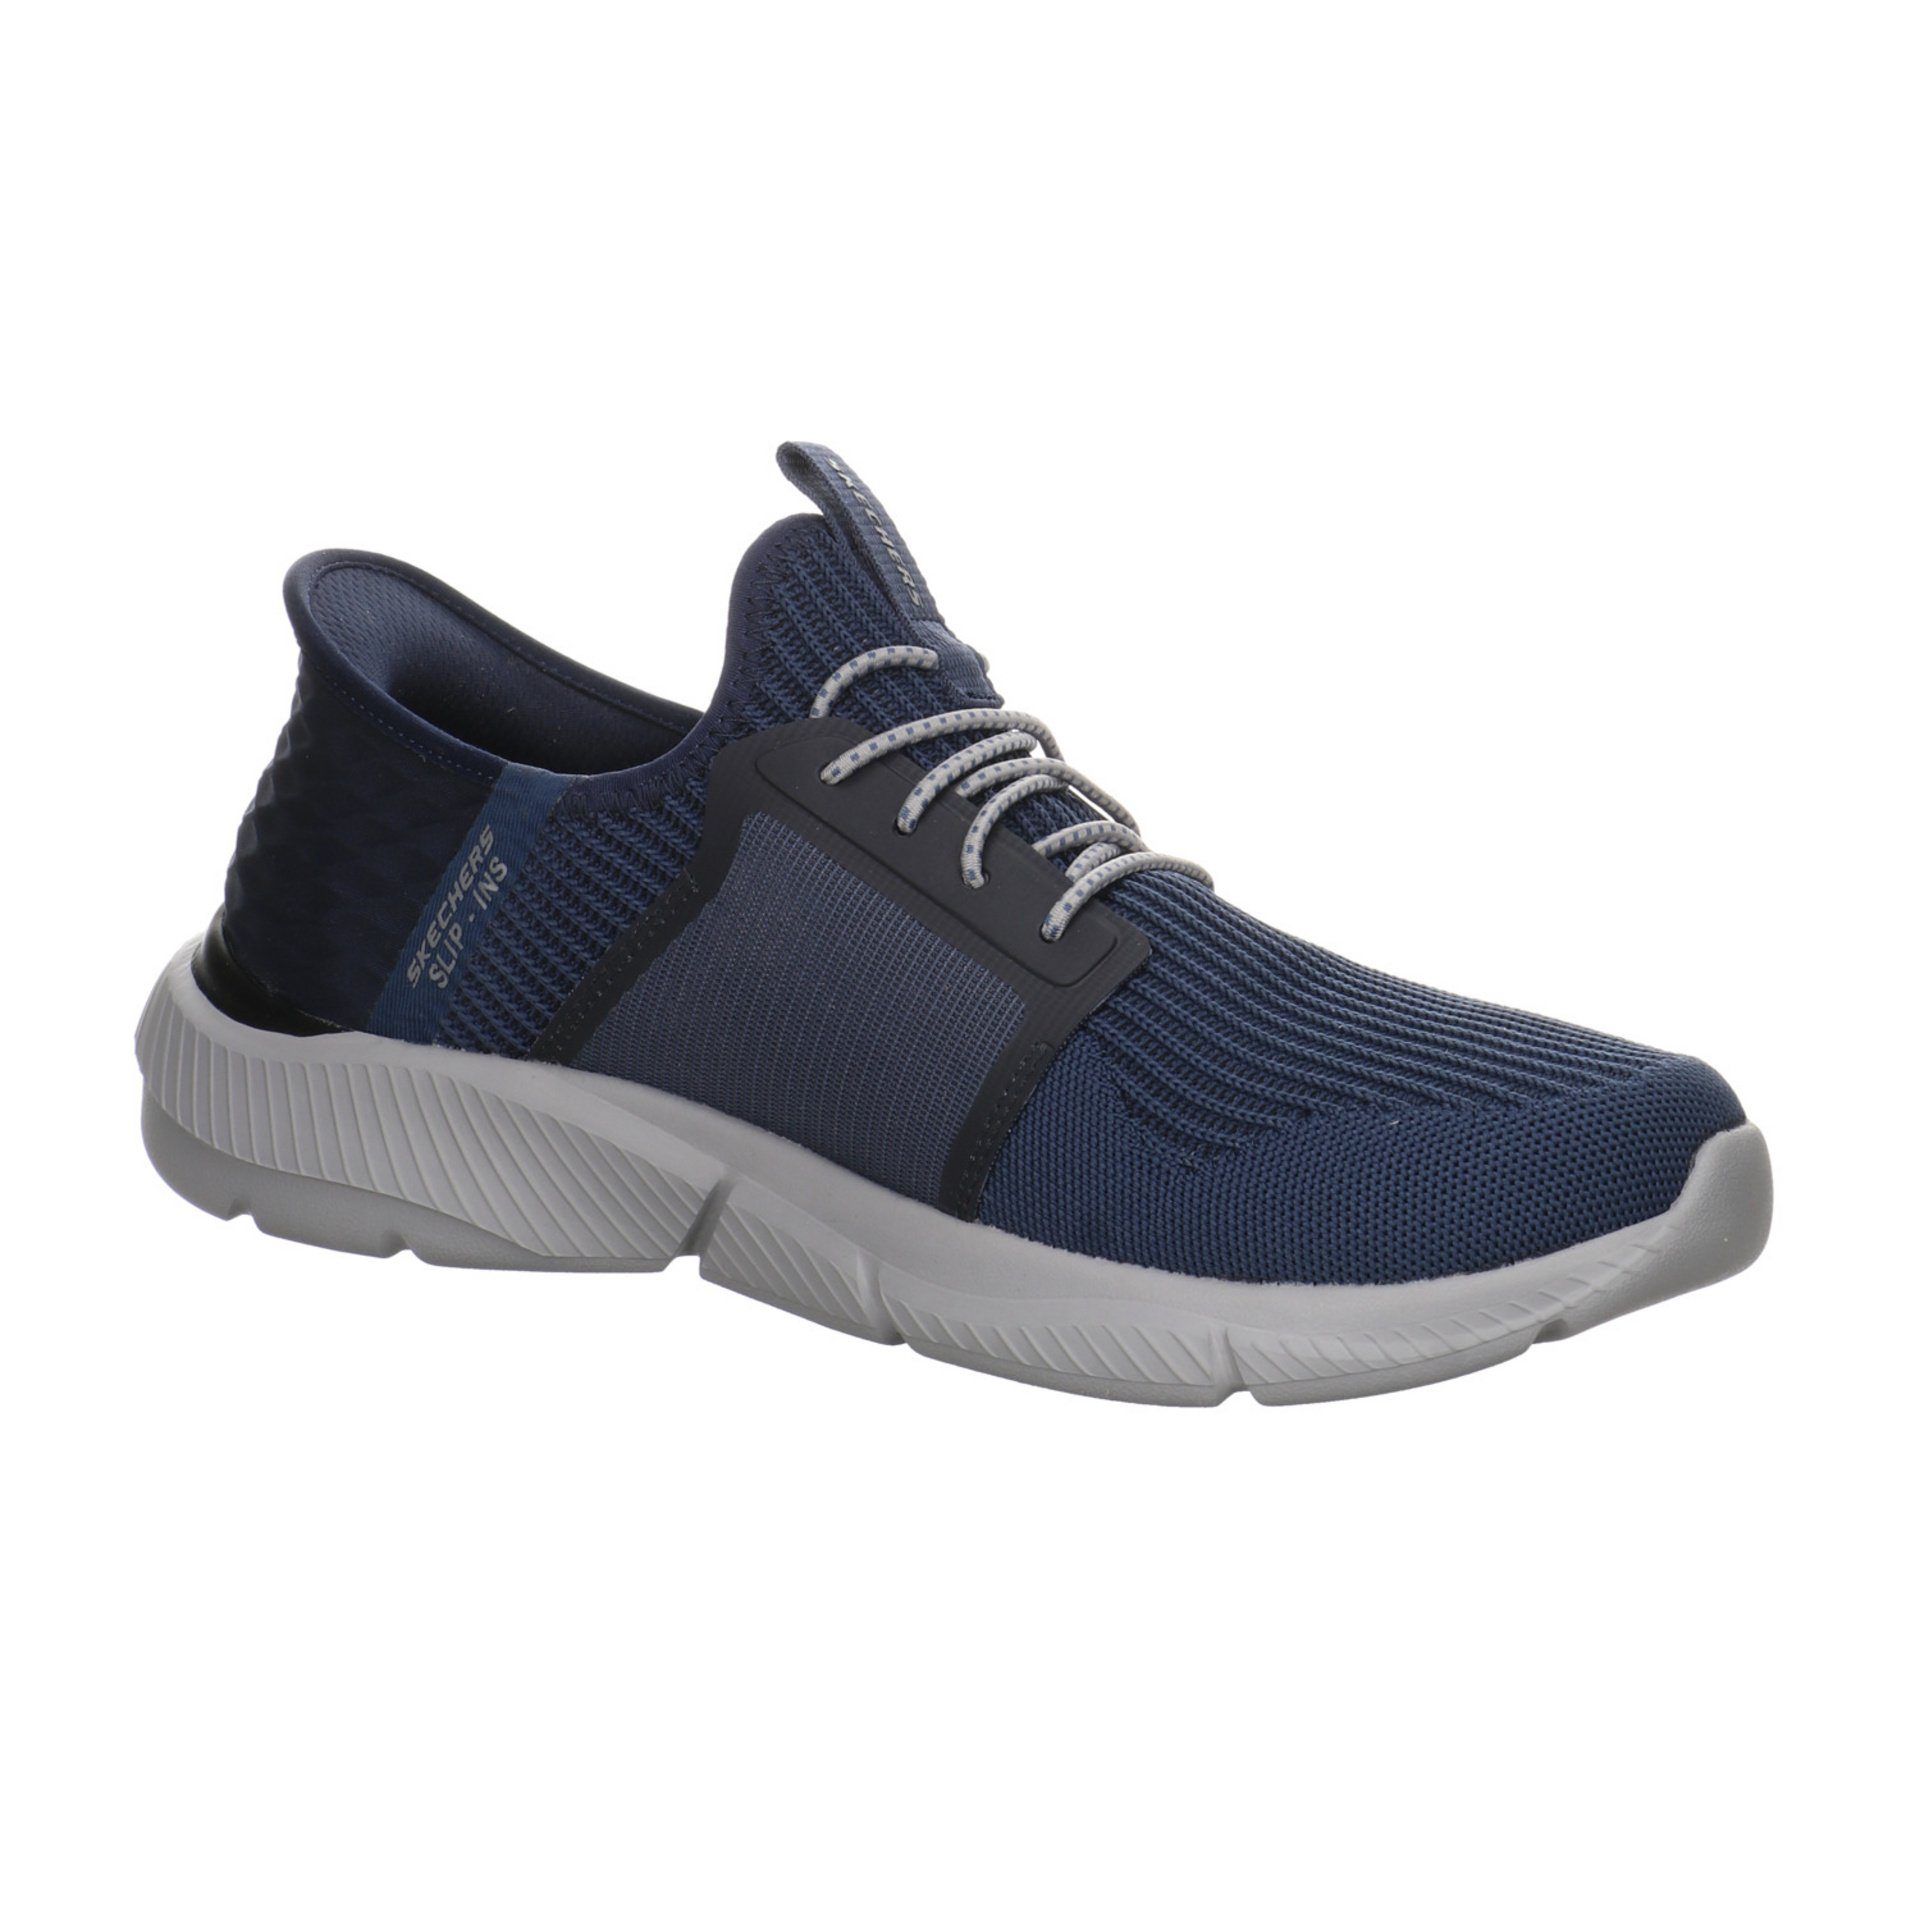 Schuhe Slipper Synthetik Skechers Slip-On Sneaker dunkel blau Herren